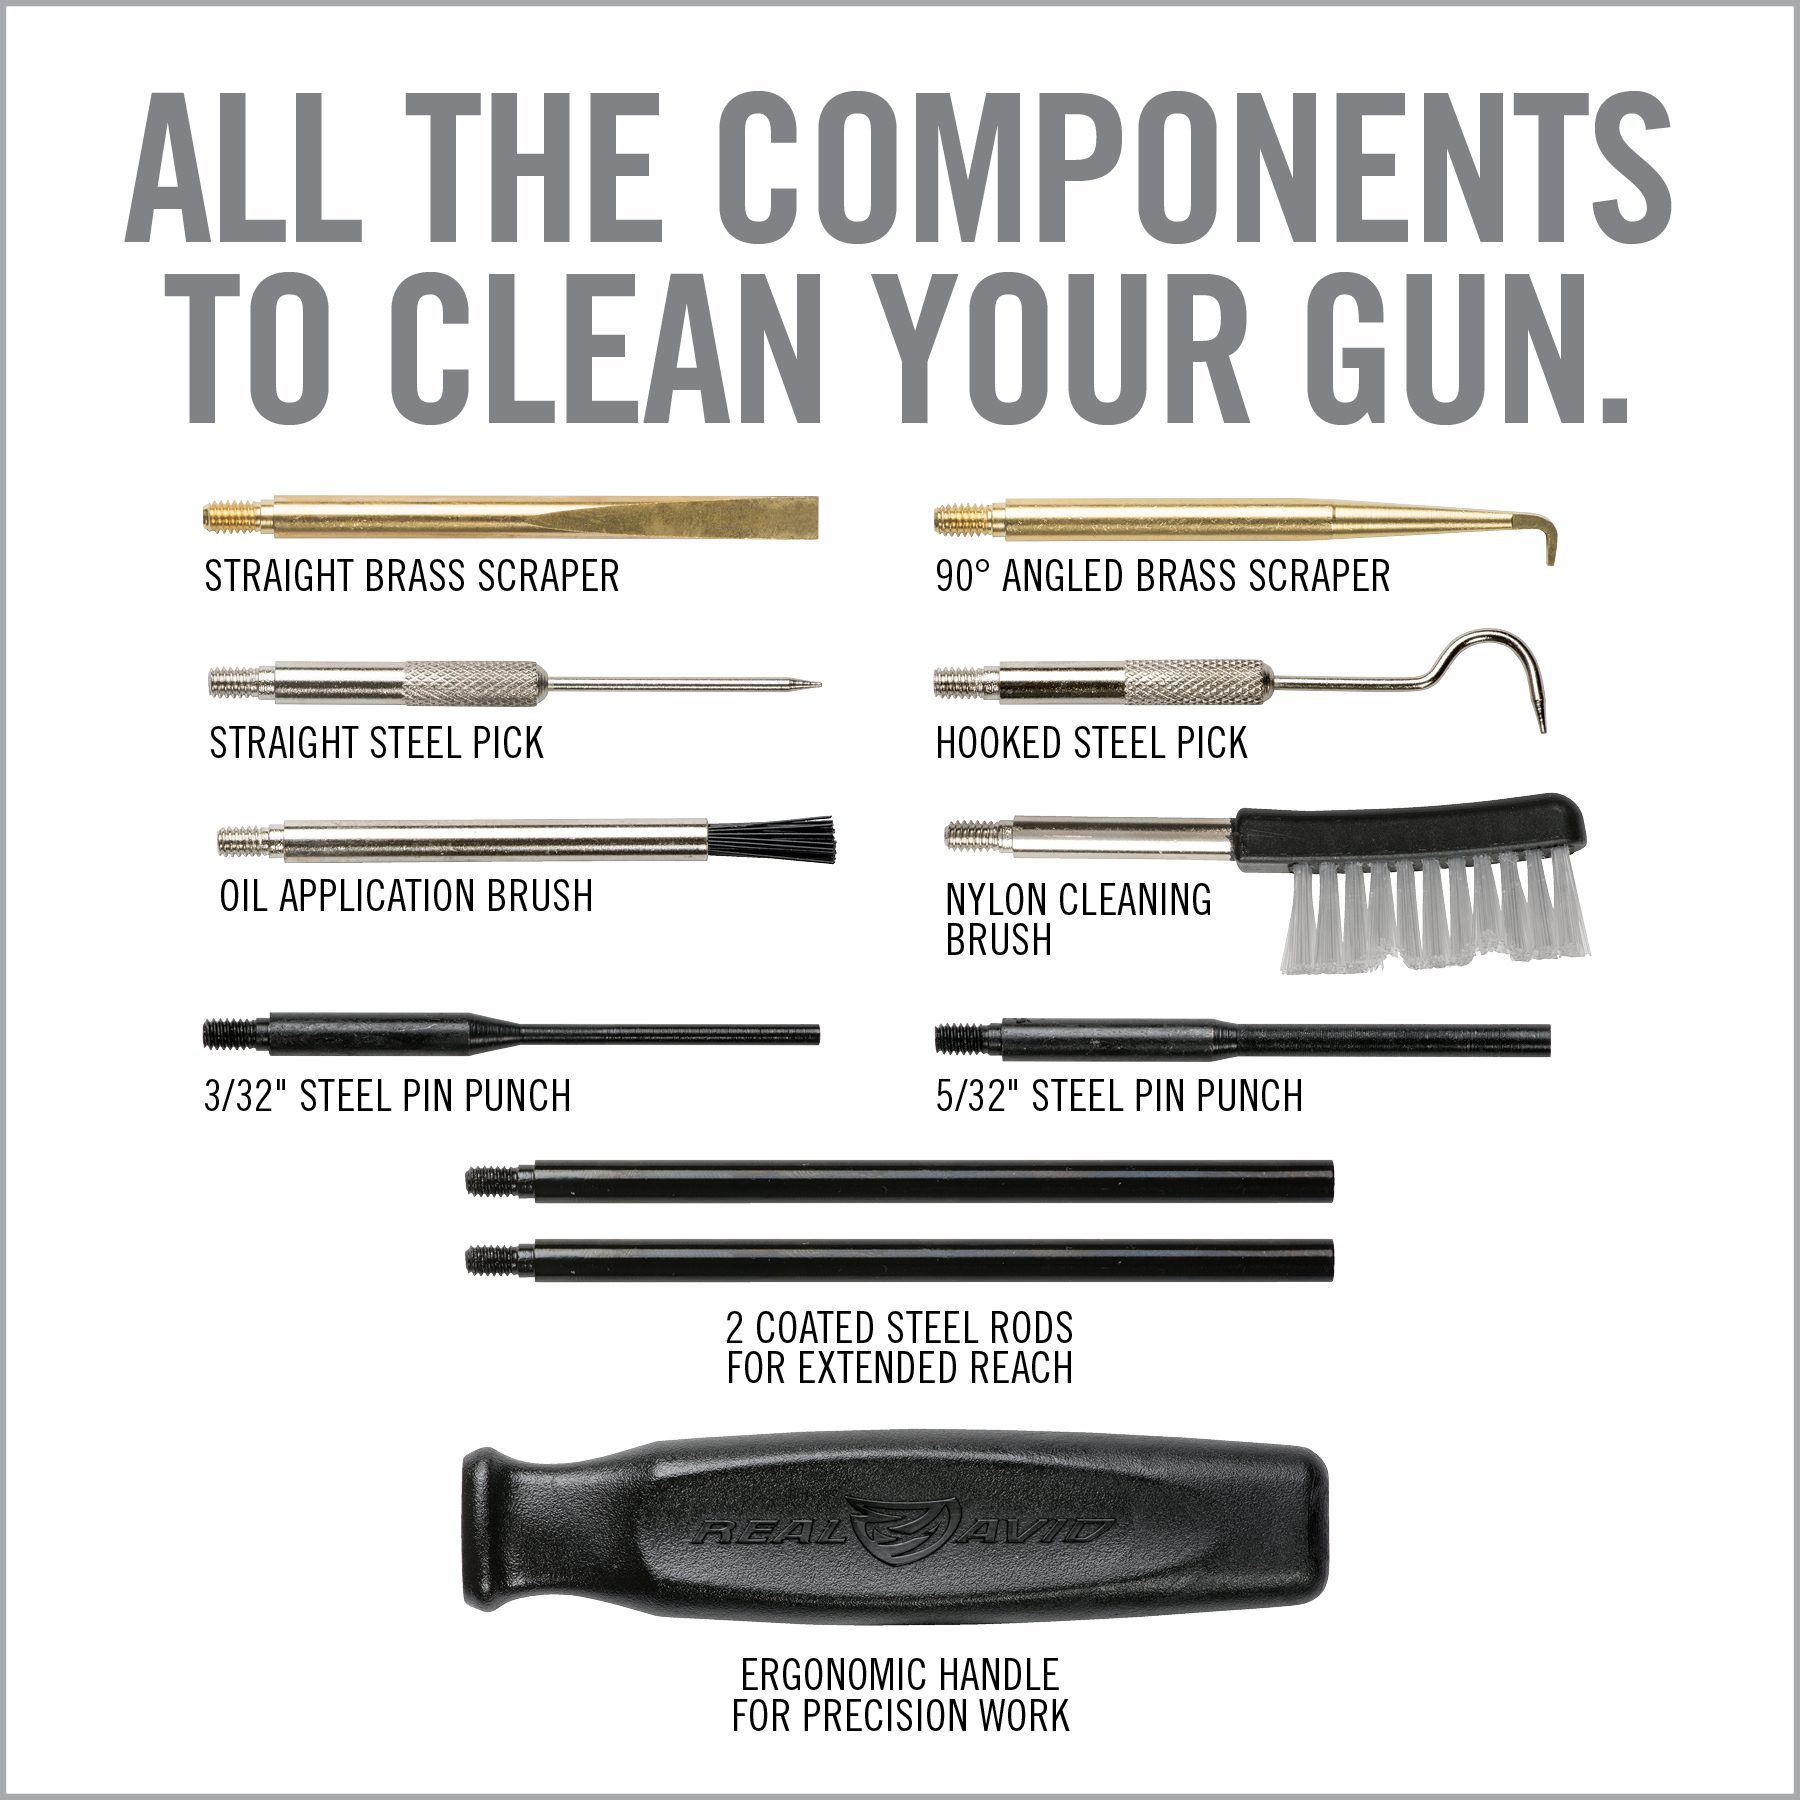 a poster describing how to clean your gun